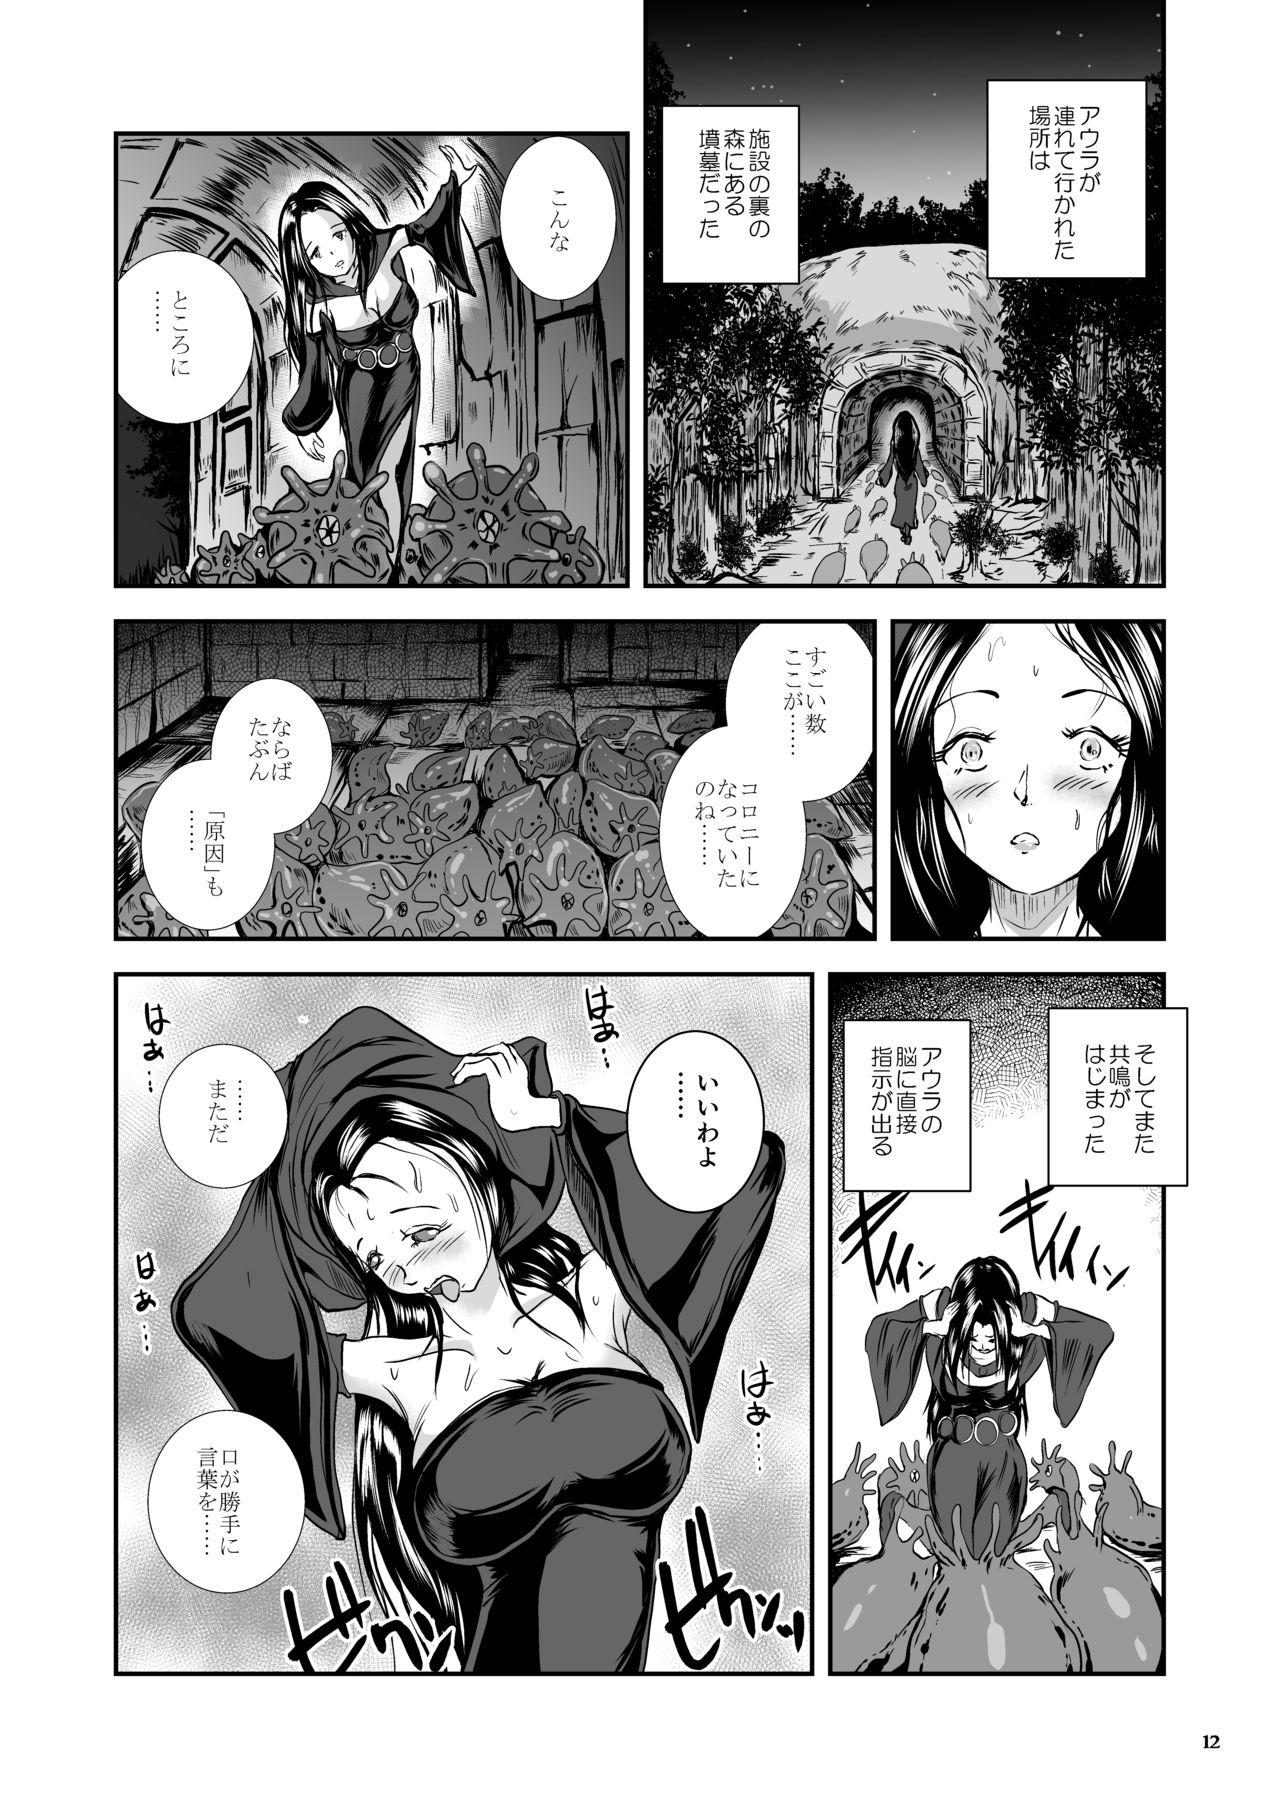 Oonamekuji to Kurokami no Mahoutsukai - Parasitized Giant Slugs V.S. Sorceress of the Black Hair as Aura 103